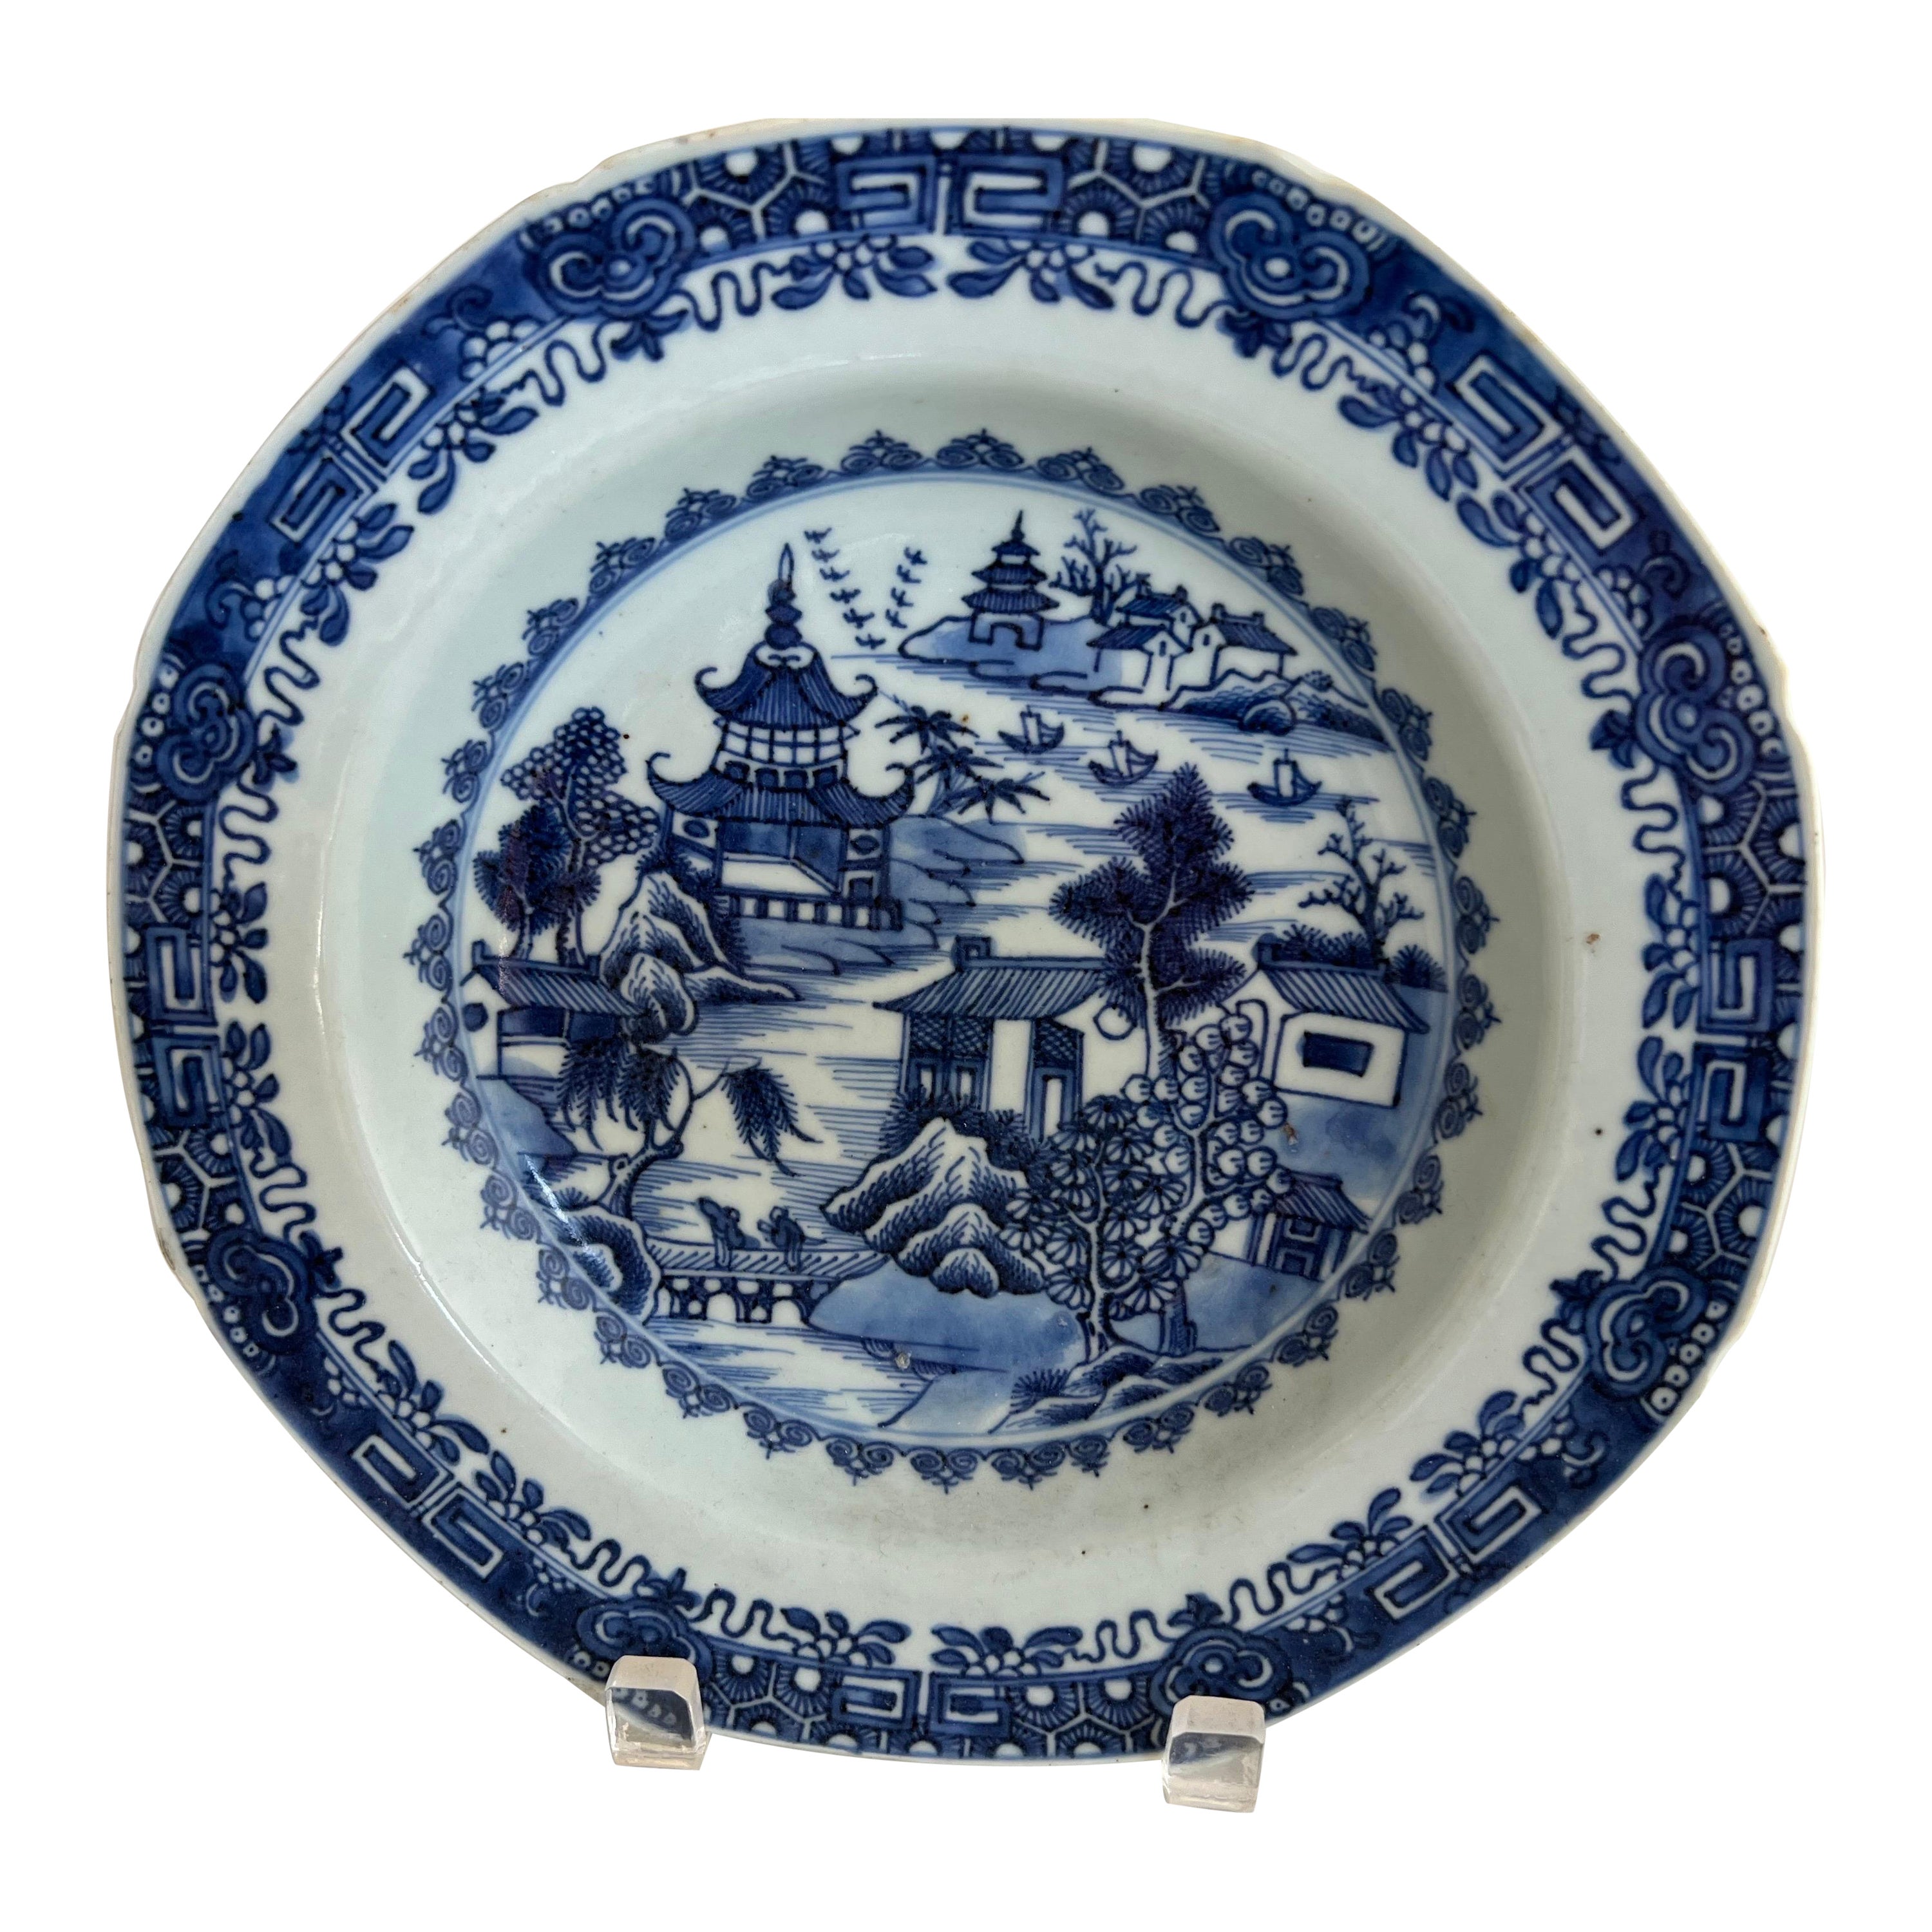 A.I.C. A.C.C. Assiette d'exportation chinoise bleu et blanc du 18e siècle